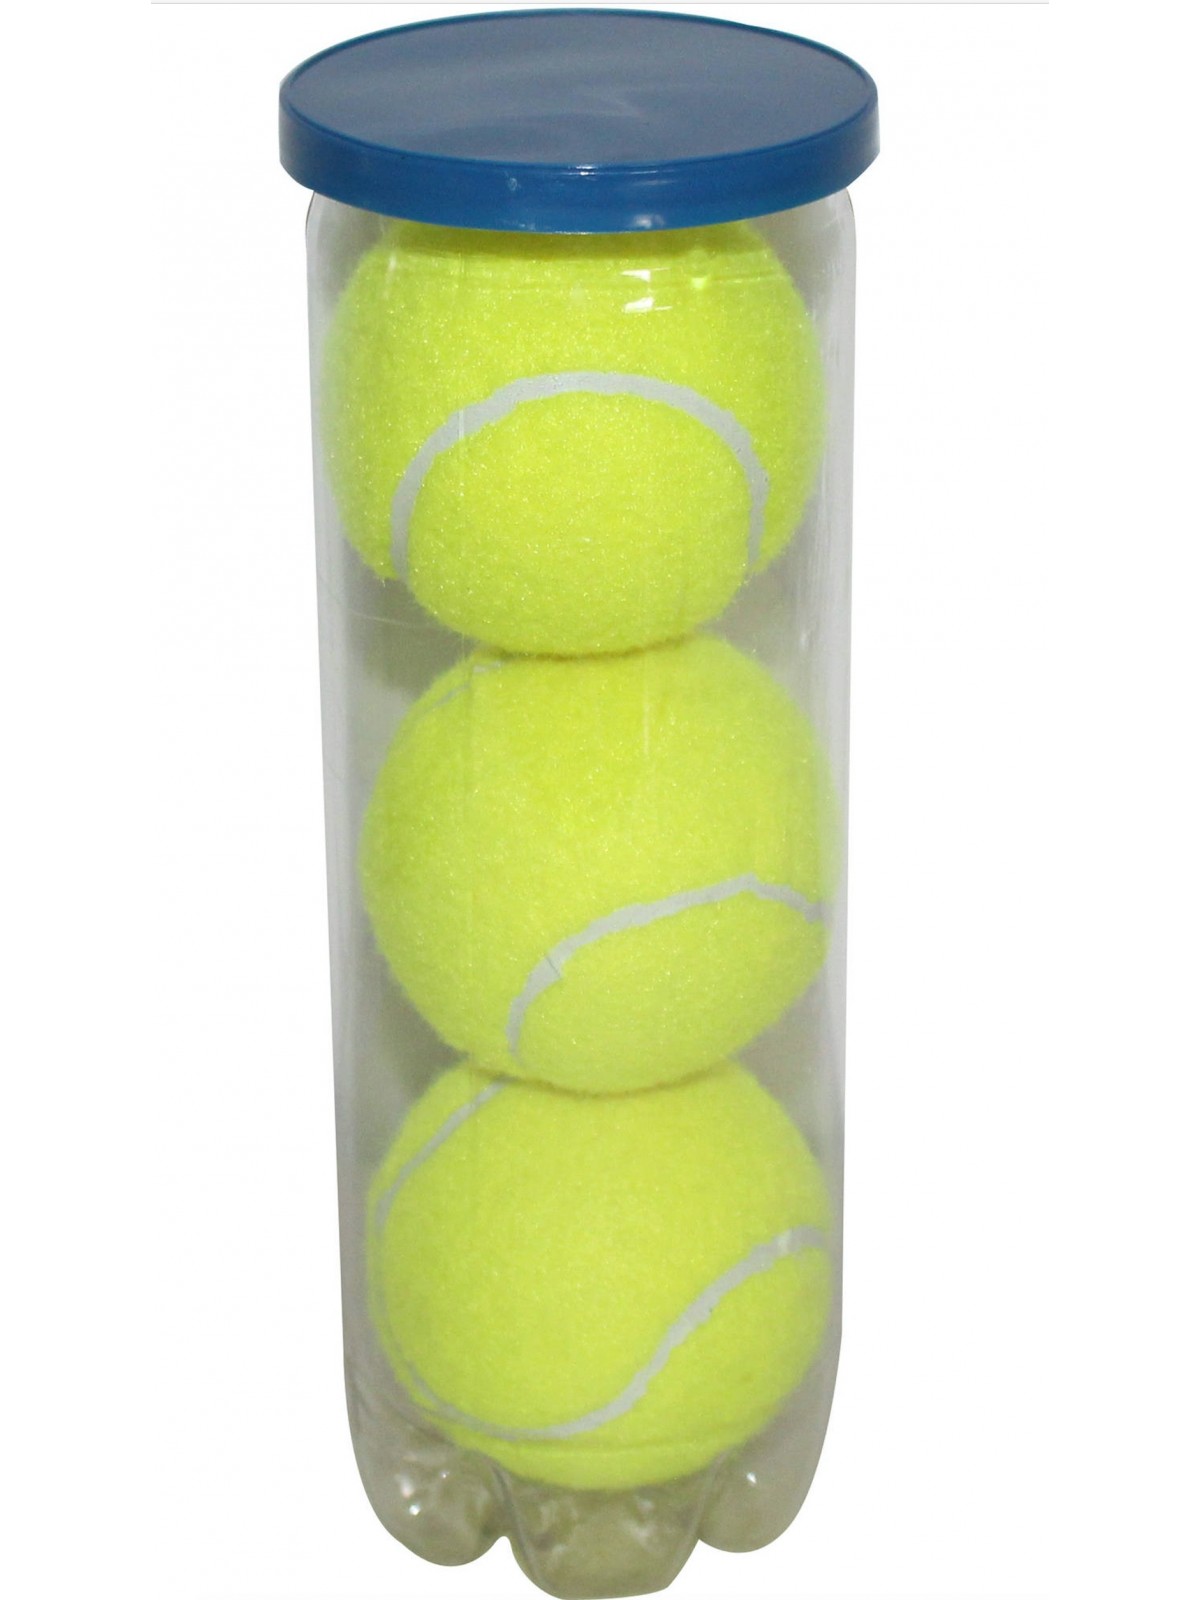 99-546 Lot de 3 balles de tennis - Qualité Balle de jeux personnalisé